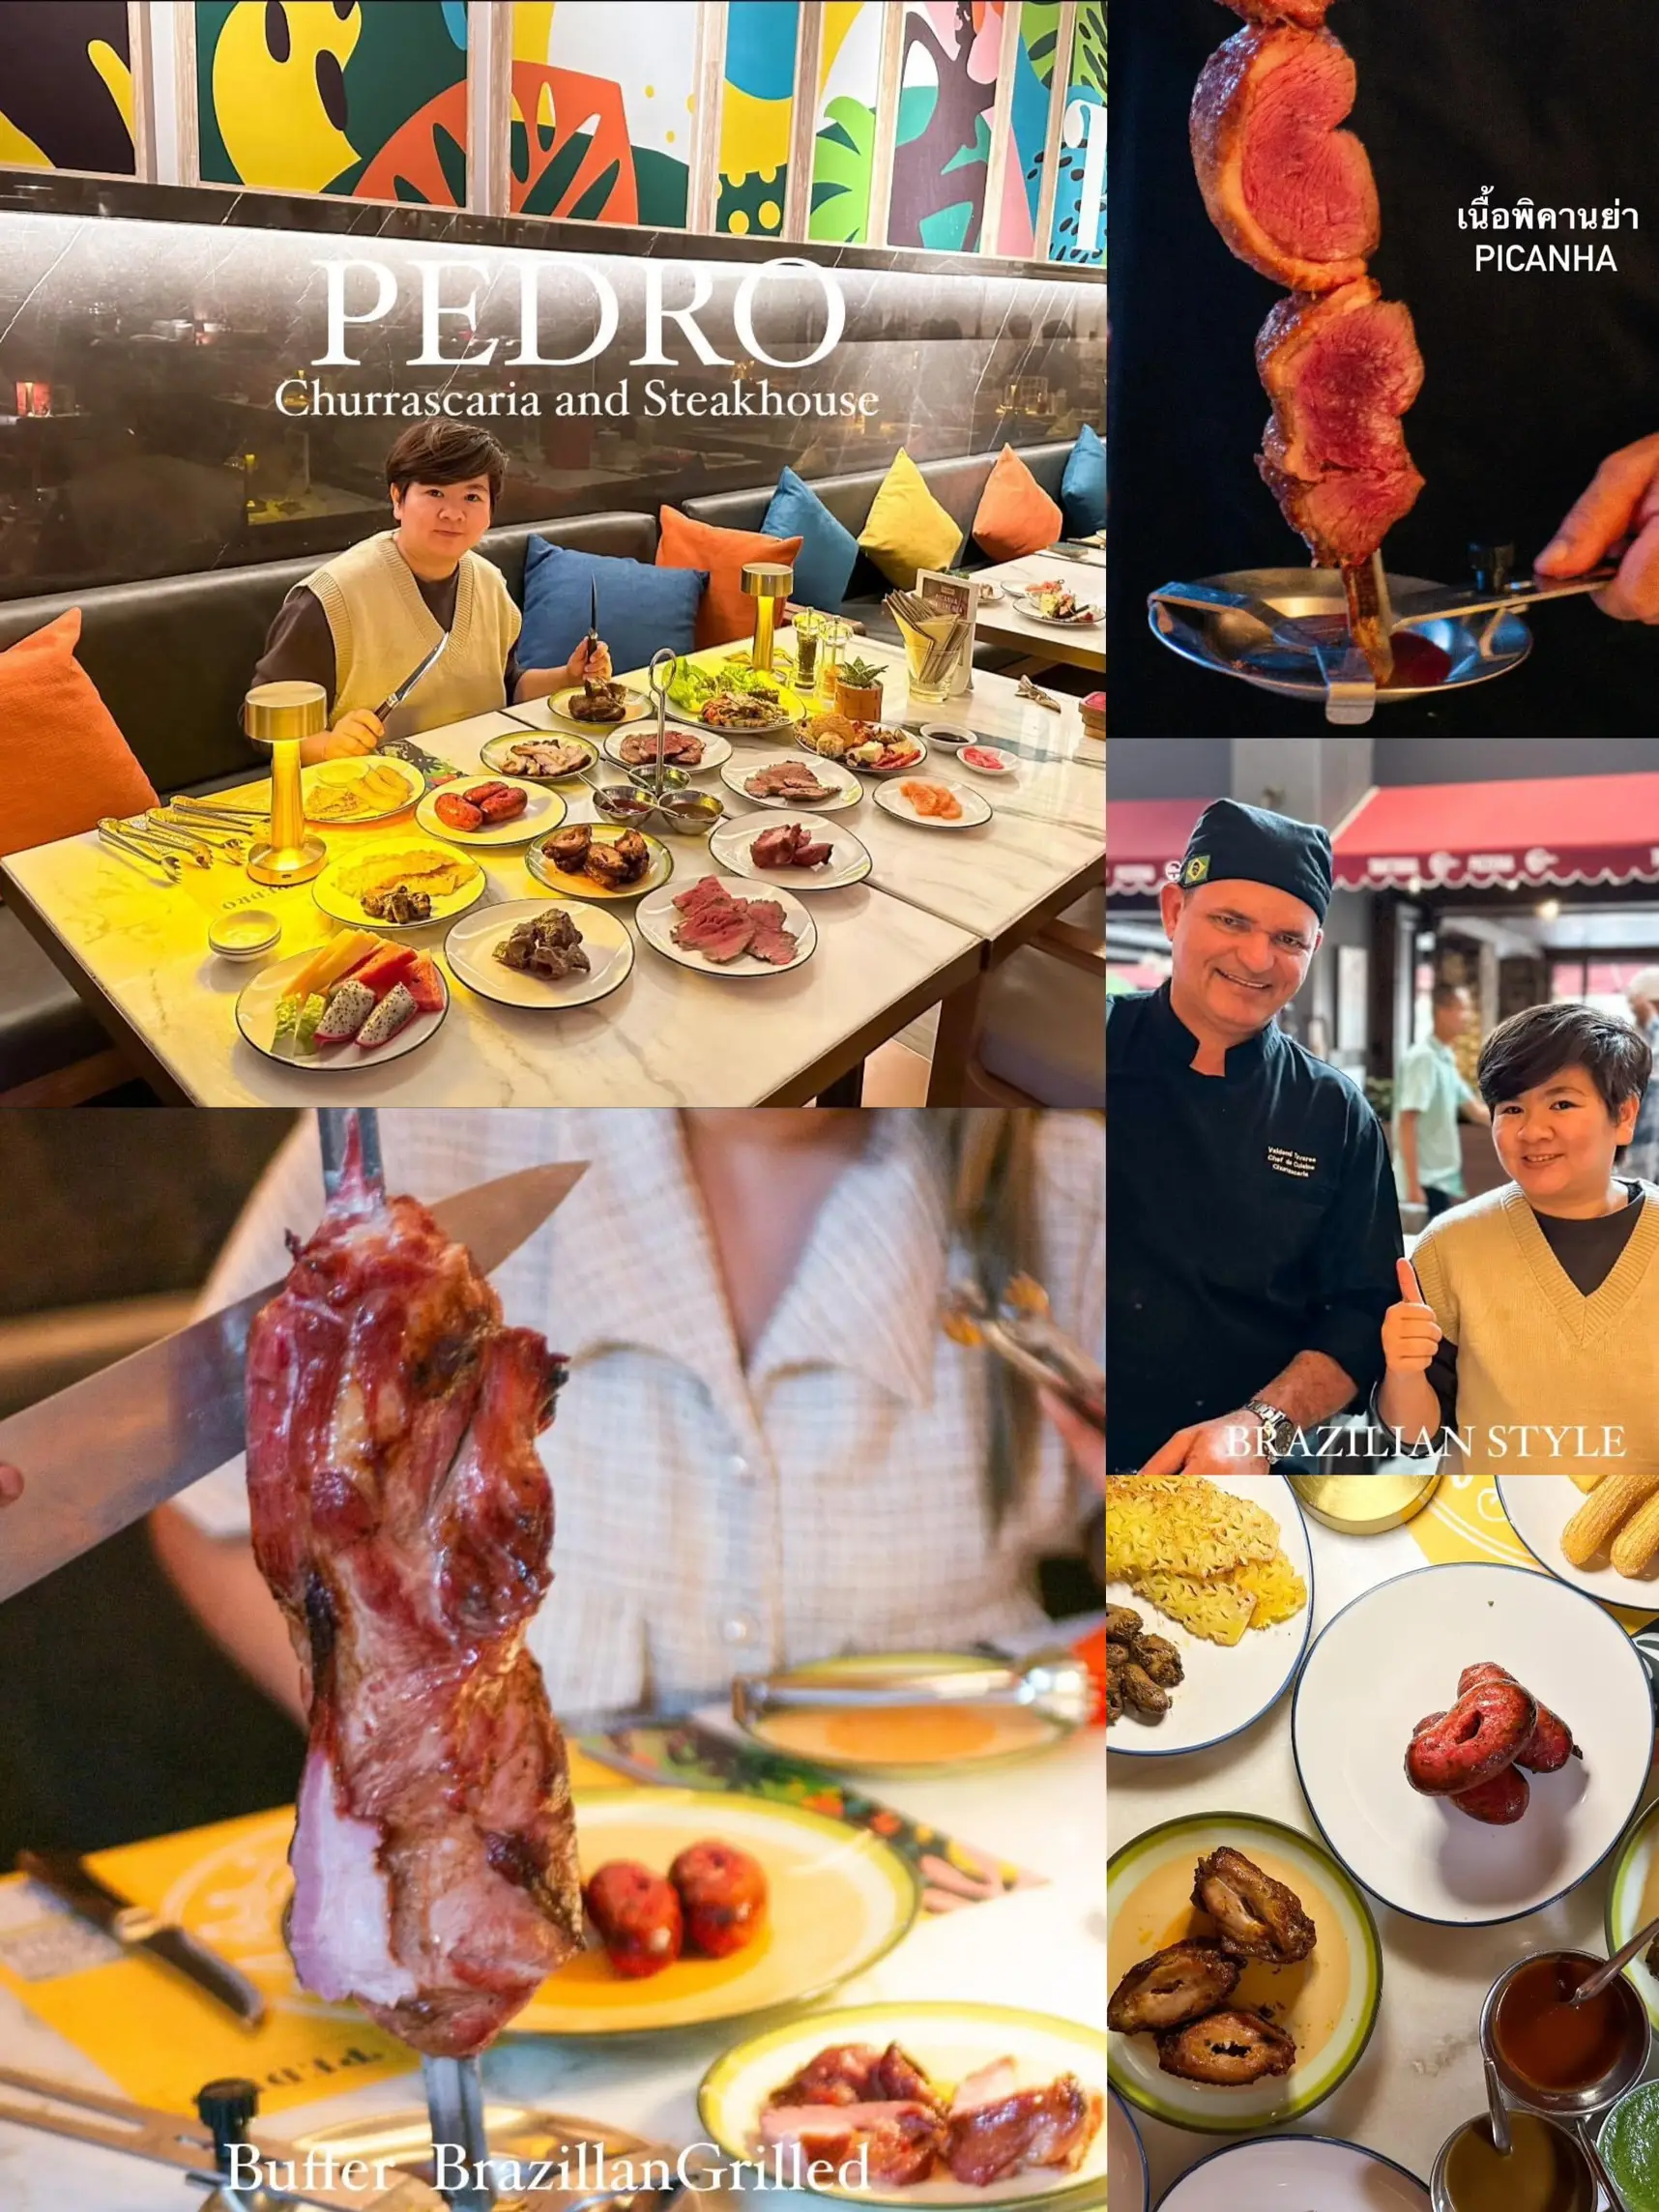 รีวิว Pedro Churrascaria and Steakhouse ห้องอาหารบราซิลบุฟเฟต์